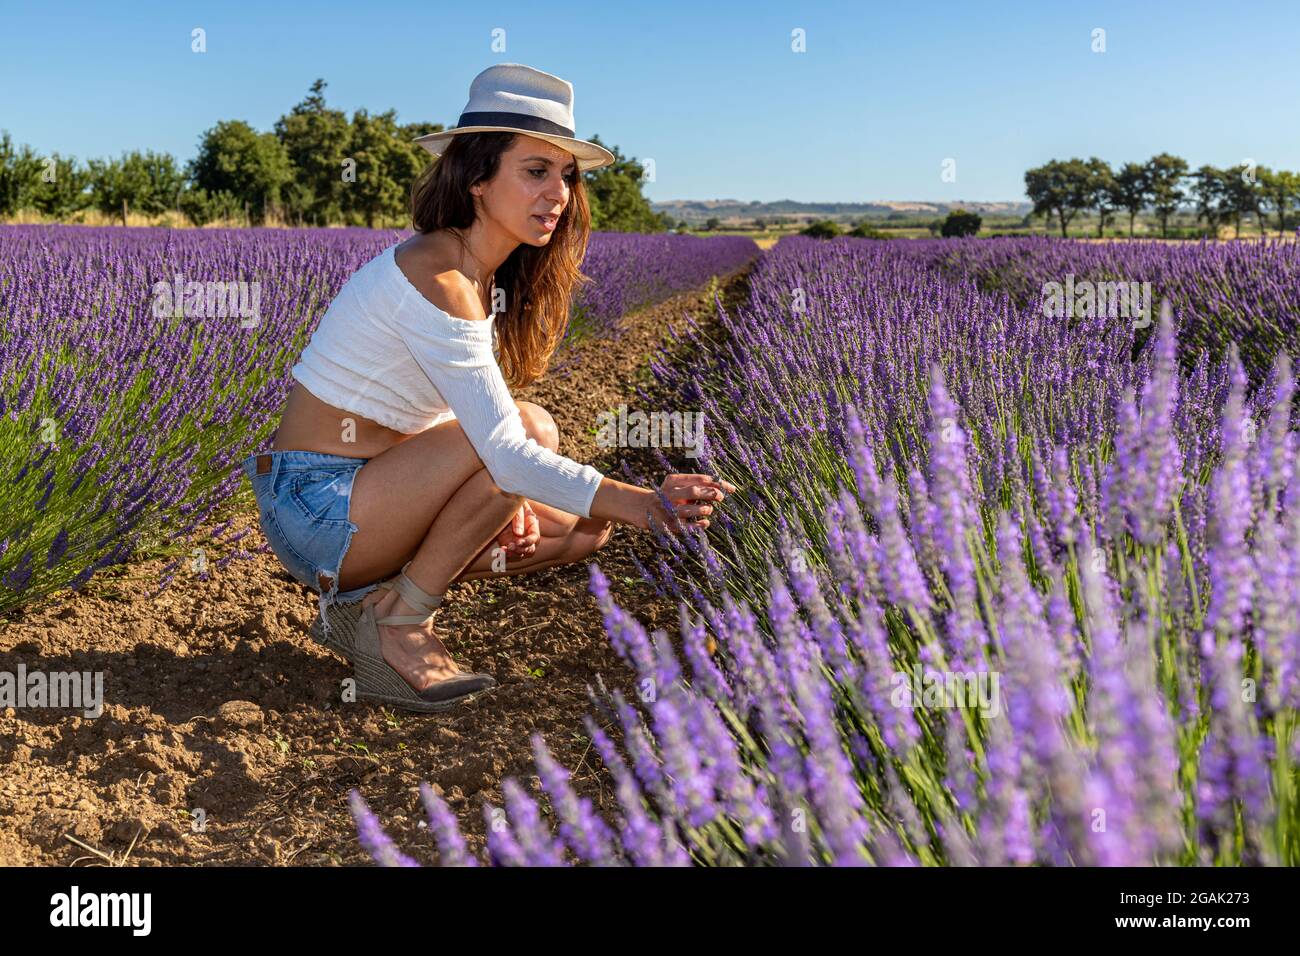 Eine junge Frau in einem Feld blühenden Lavendels. Sie hockte sich herunter, um eine Blume zu pflücken. Lavendelblüten im Vordergrund und Bäume im Hintergrund. Stockfoto